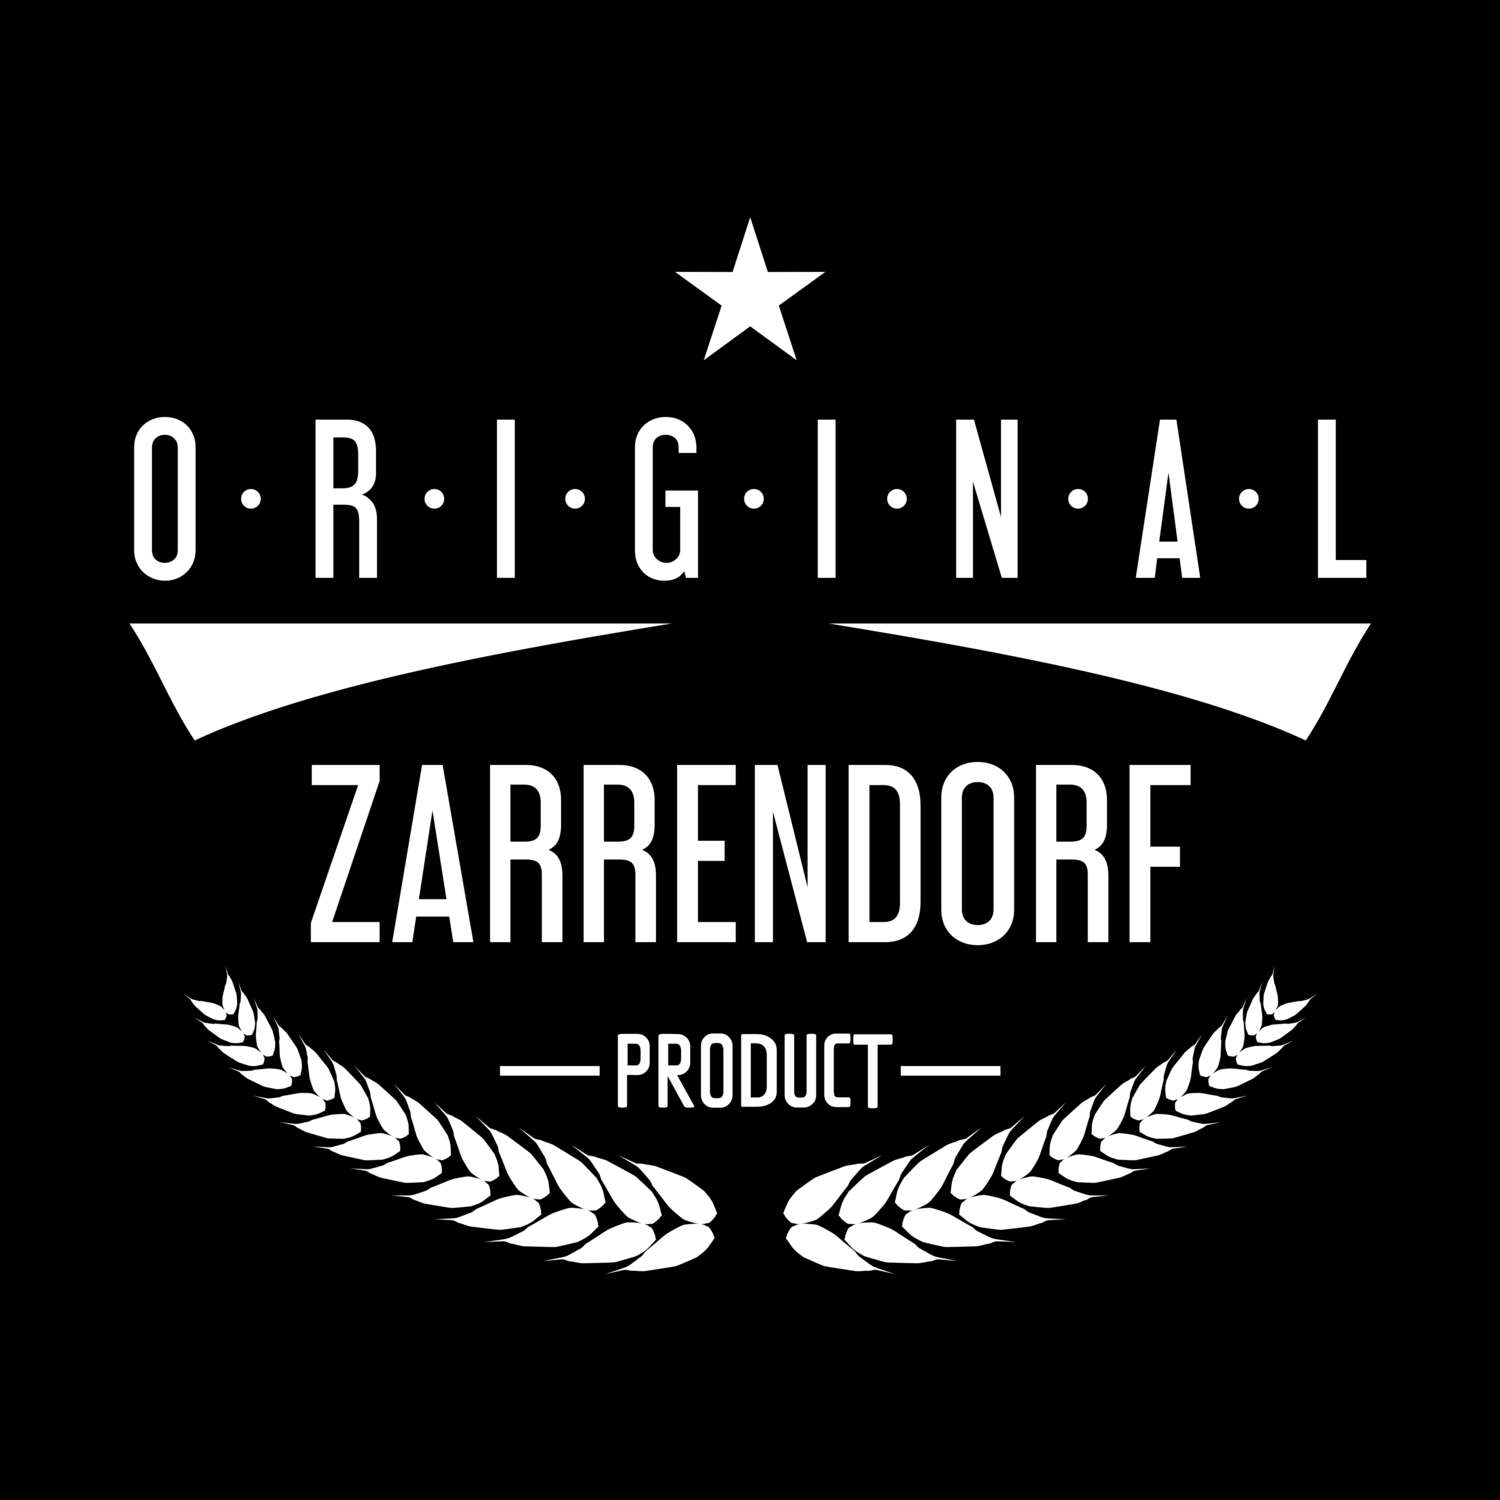 Zarrendorf T-Shirt »Original Product«